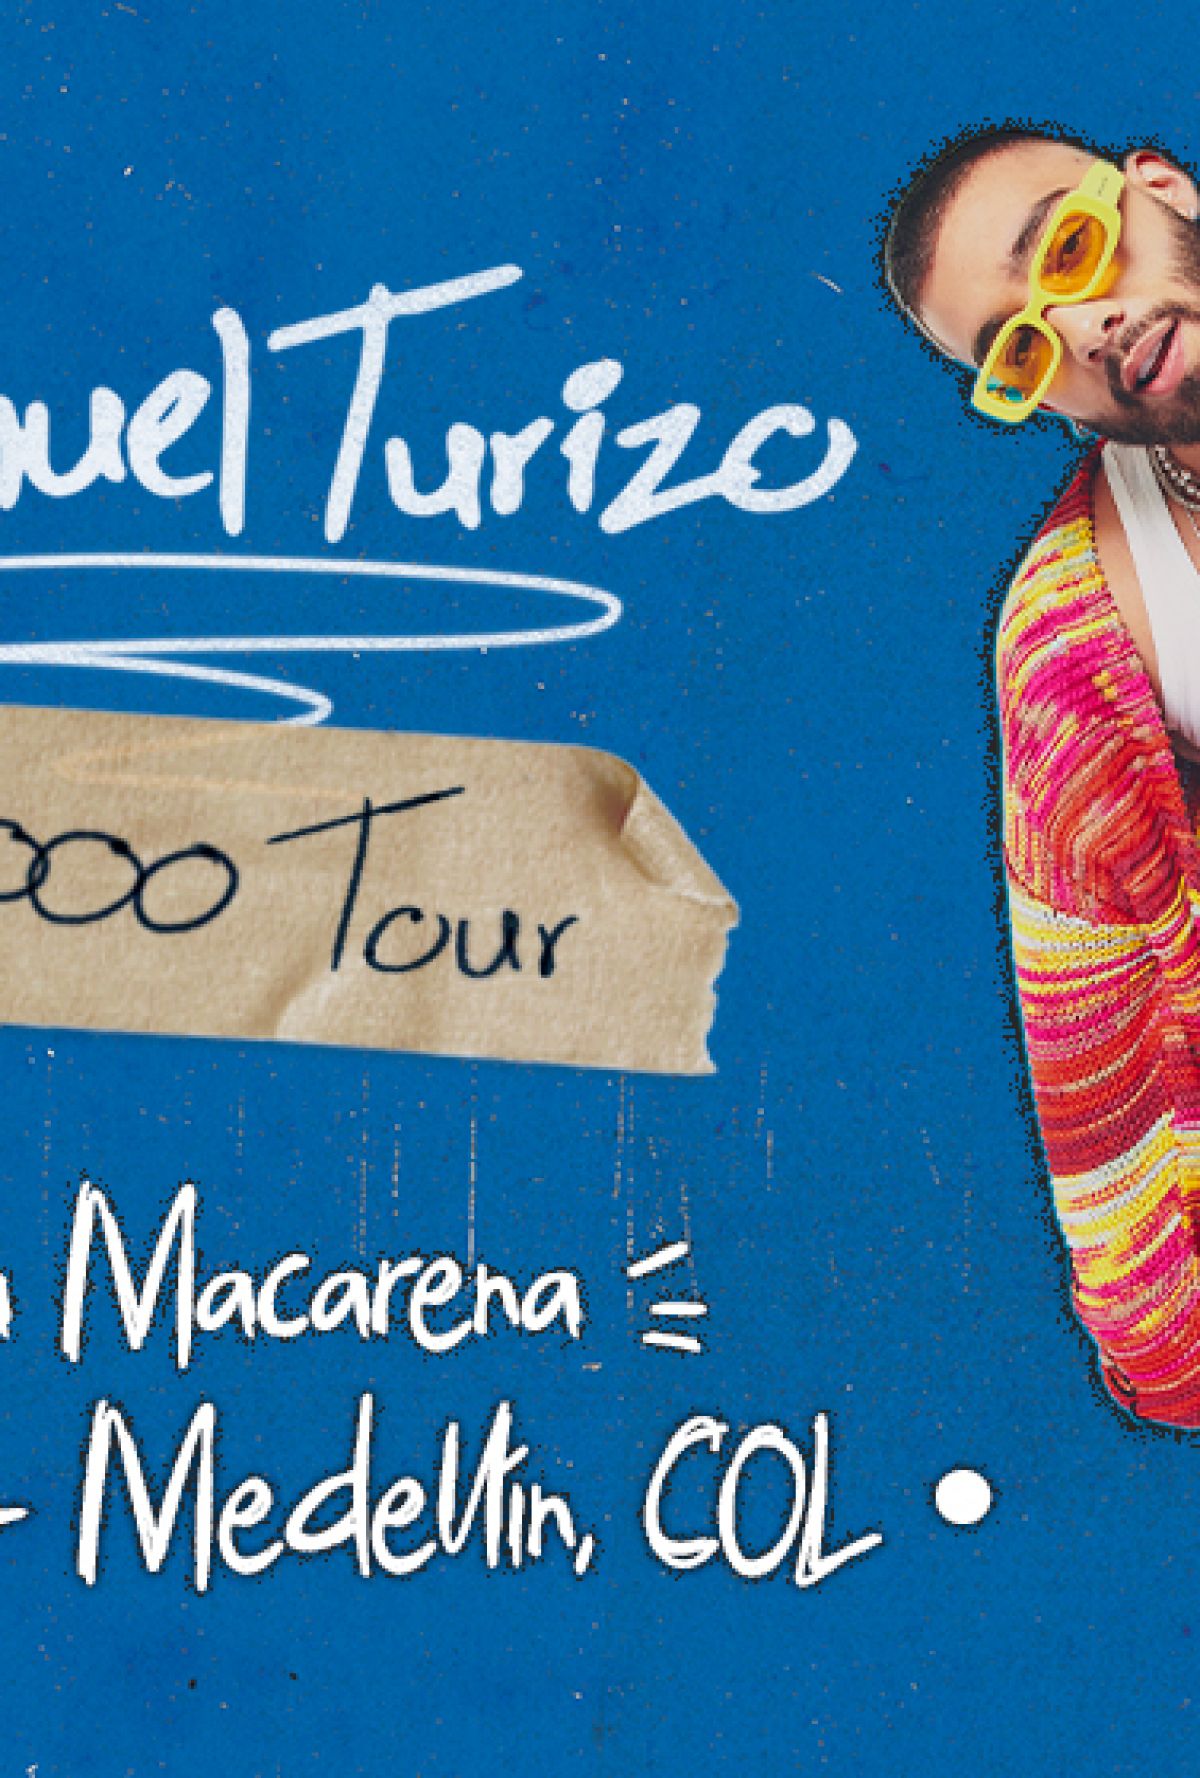 MANUEL TURIZO - 2000 TOUR